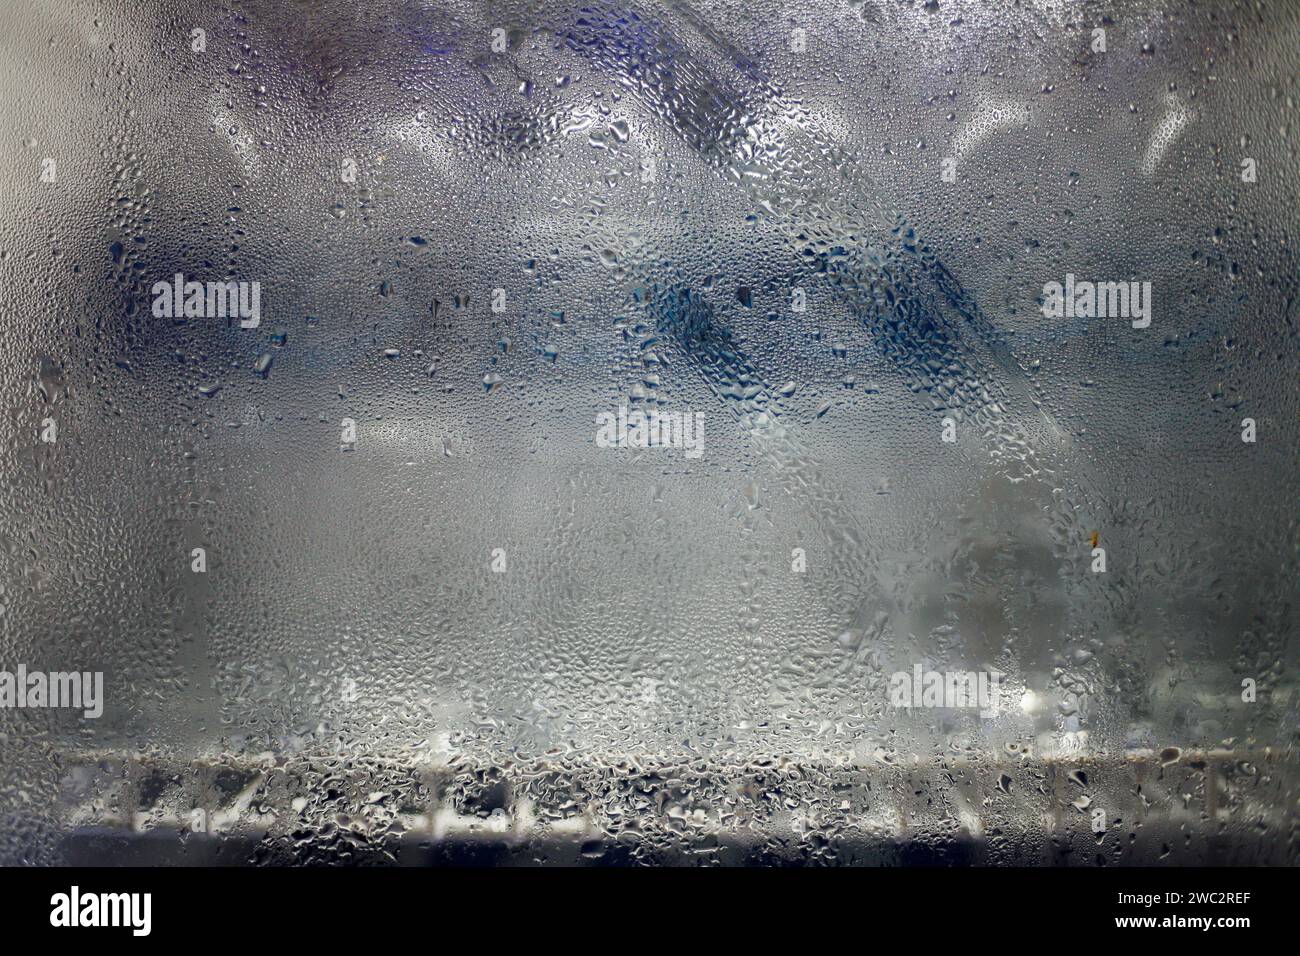 Gros plan de la condensation d'eau dans le verre du réfrigérateur. Réfrigérateur froid en verre dépoli Banque D'Images